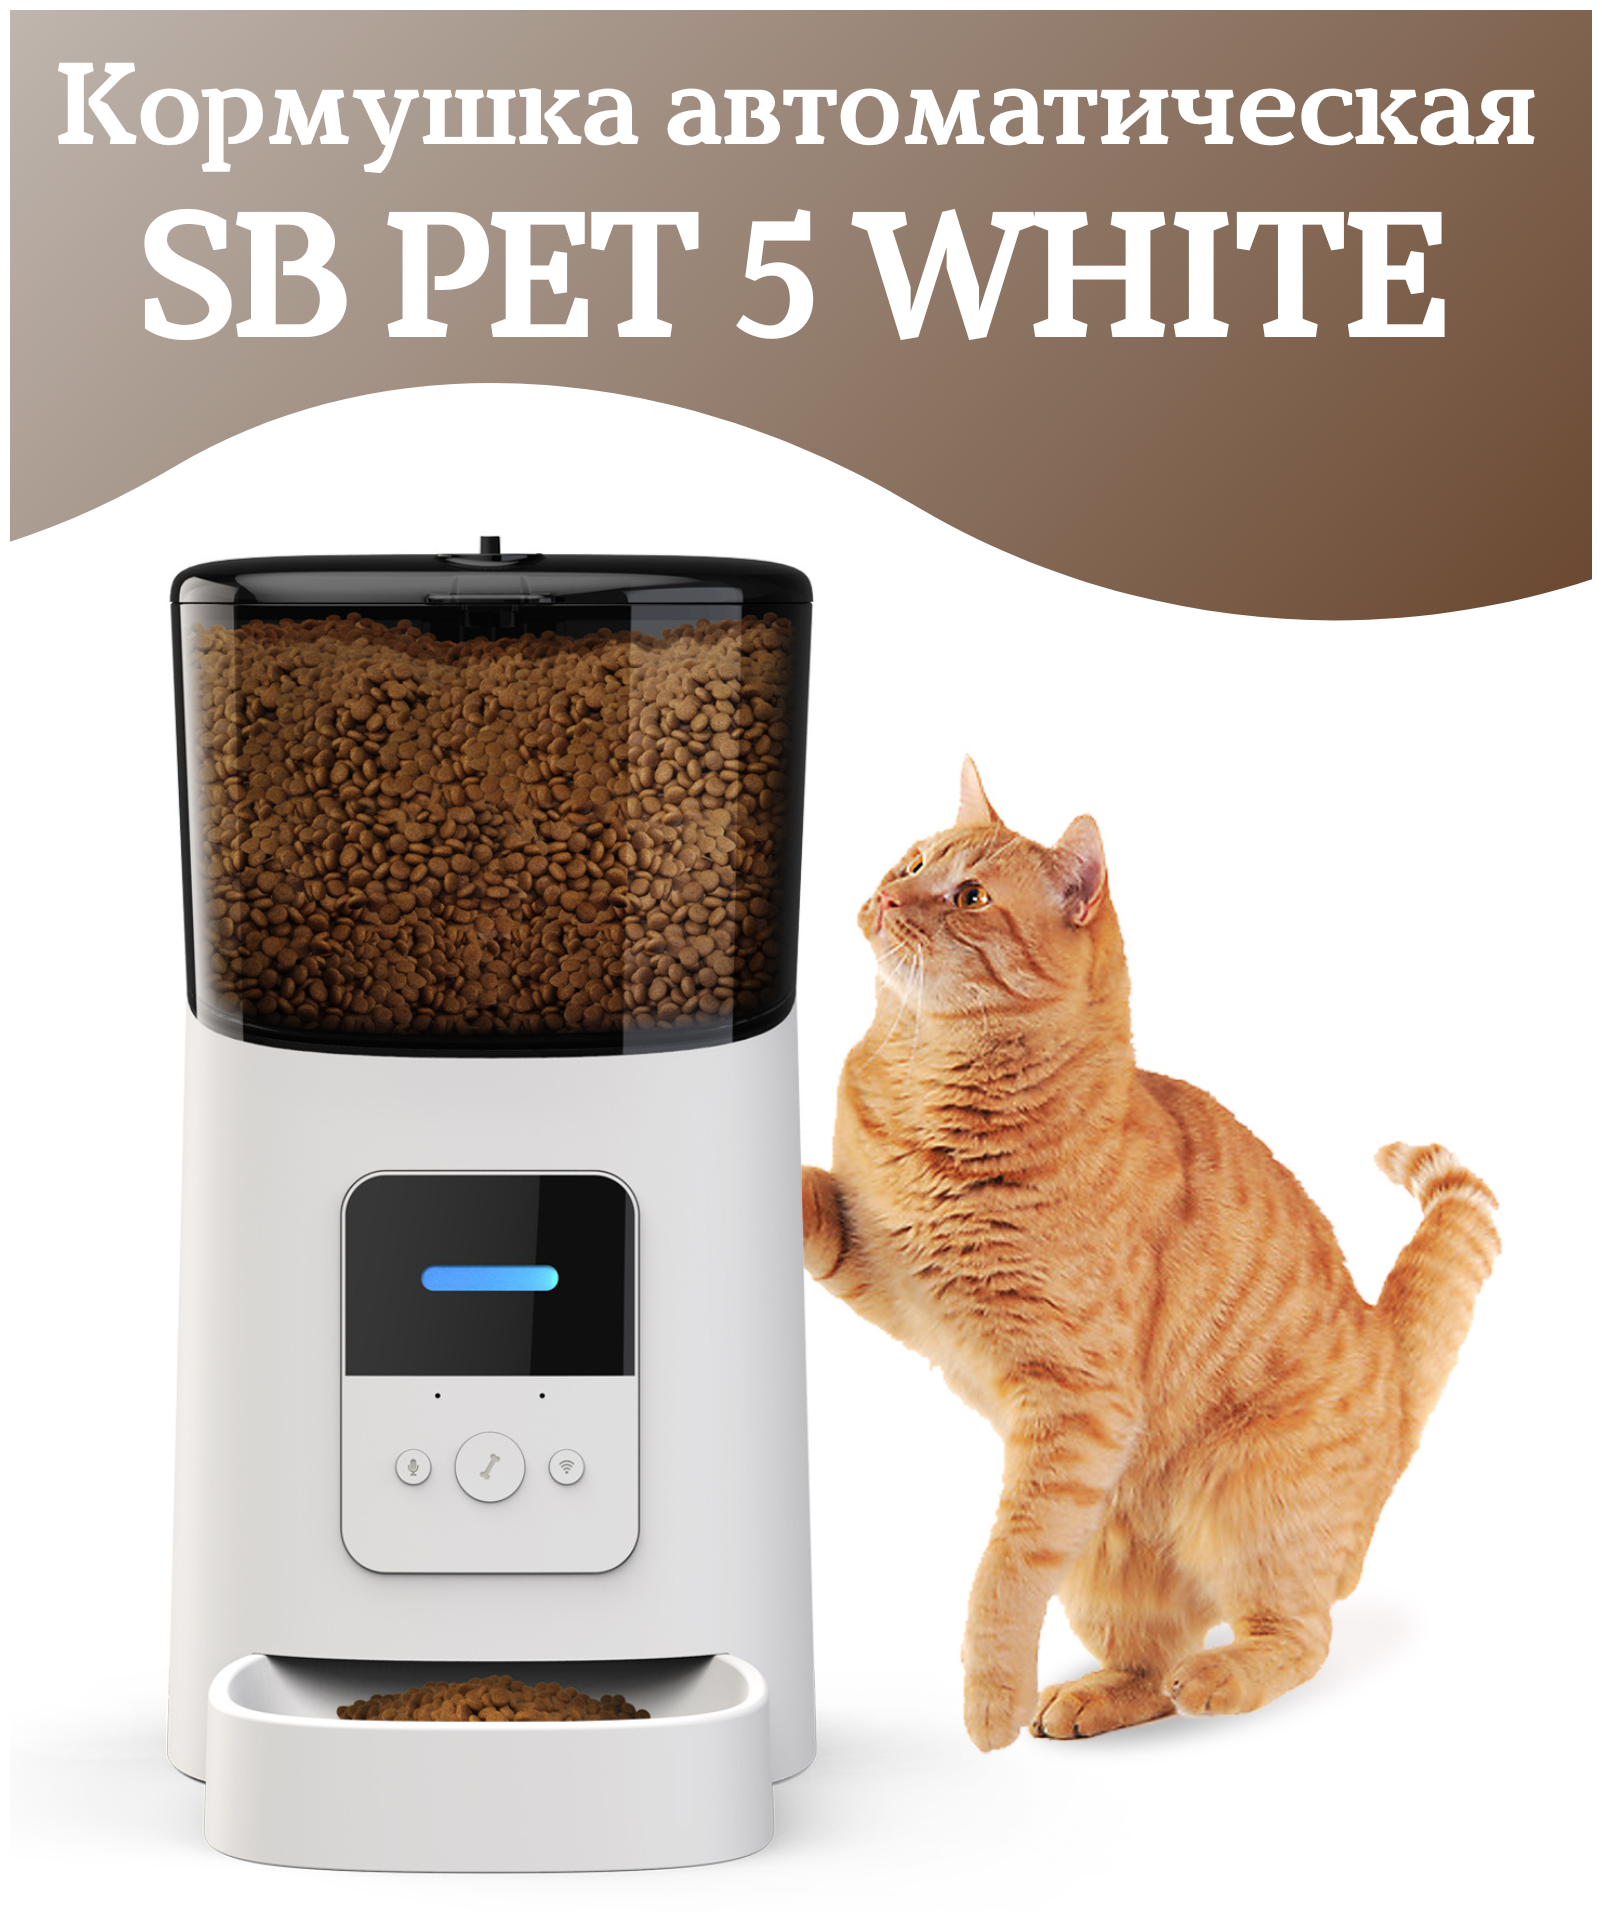 Автоматическая кормушка SB PET 5 БЕЛАЯ, миска для кошек, умная кормушка для кошек и собак, приложение Tyua Smart, объем 6л.